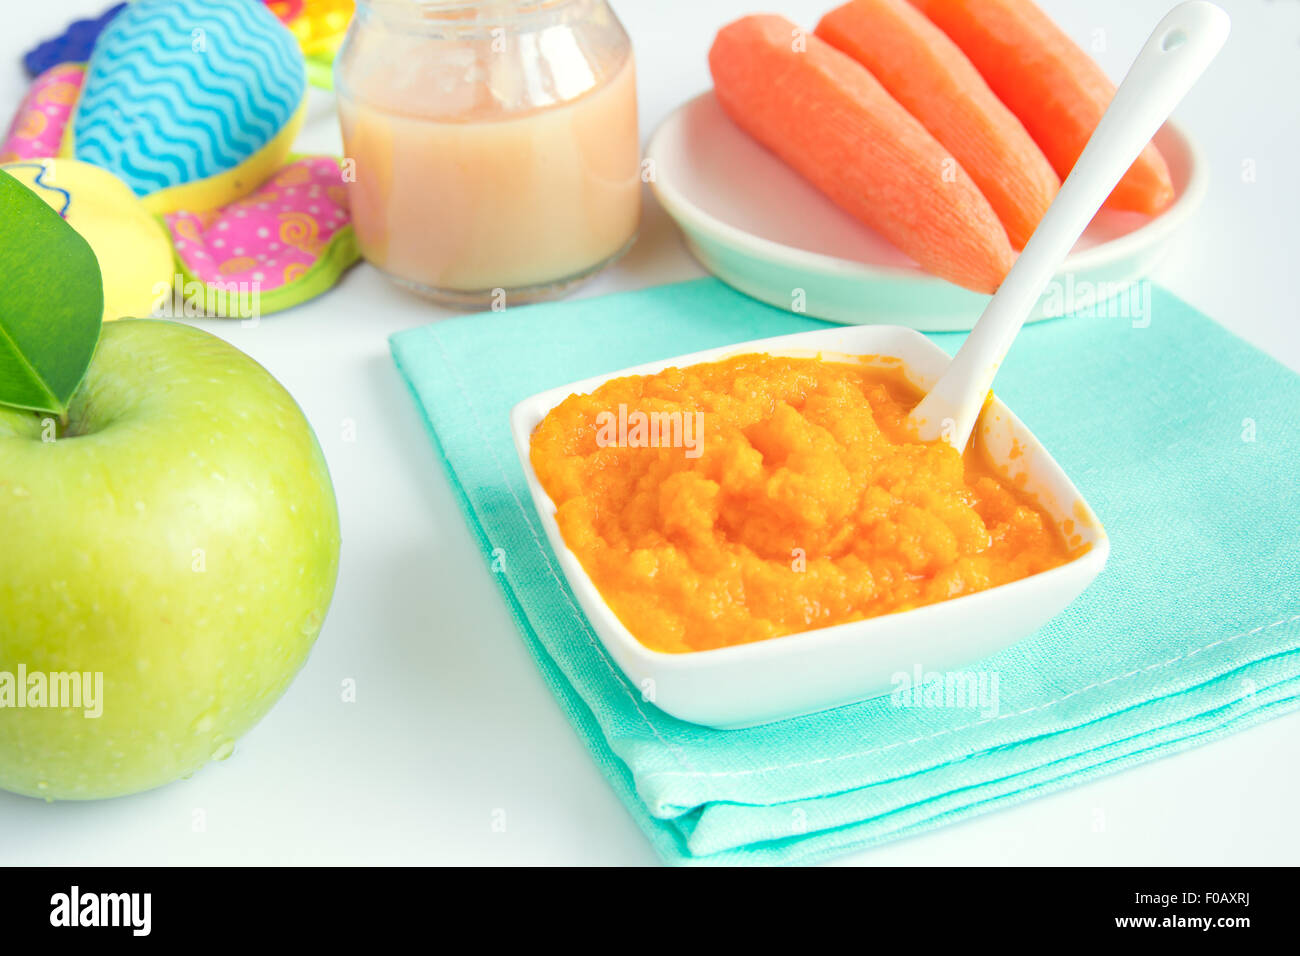 Comida para bebés (puré de zanahoria y aplle) cerrar el cuadro blanco Foto de stock